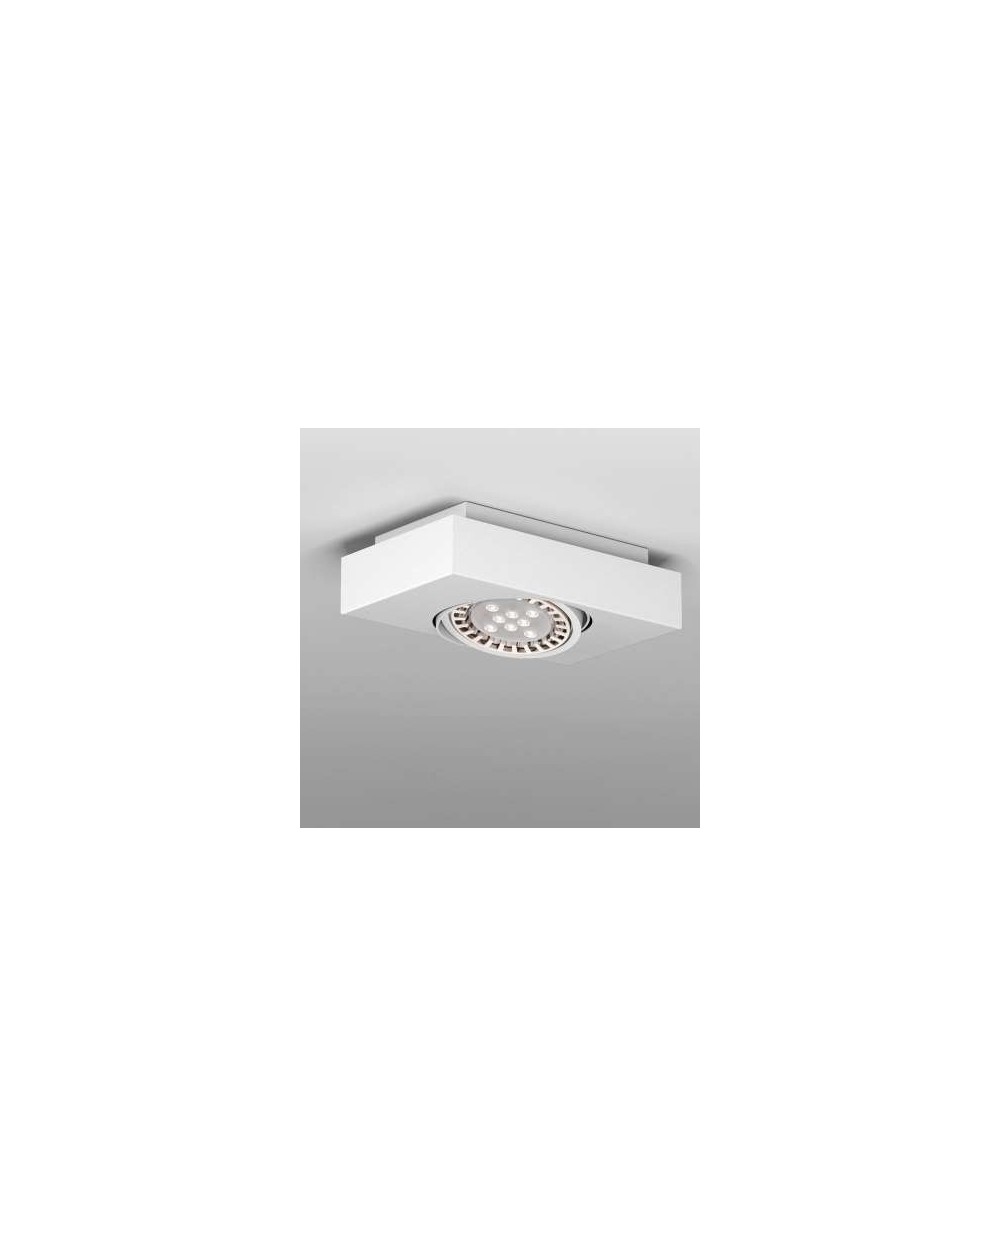 Lampa Merida A1Sh AR111 stropowy - Cleoni sufitowa oprawa metalowa